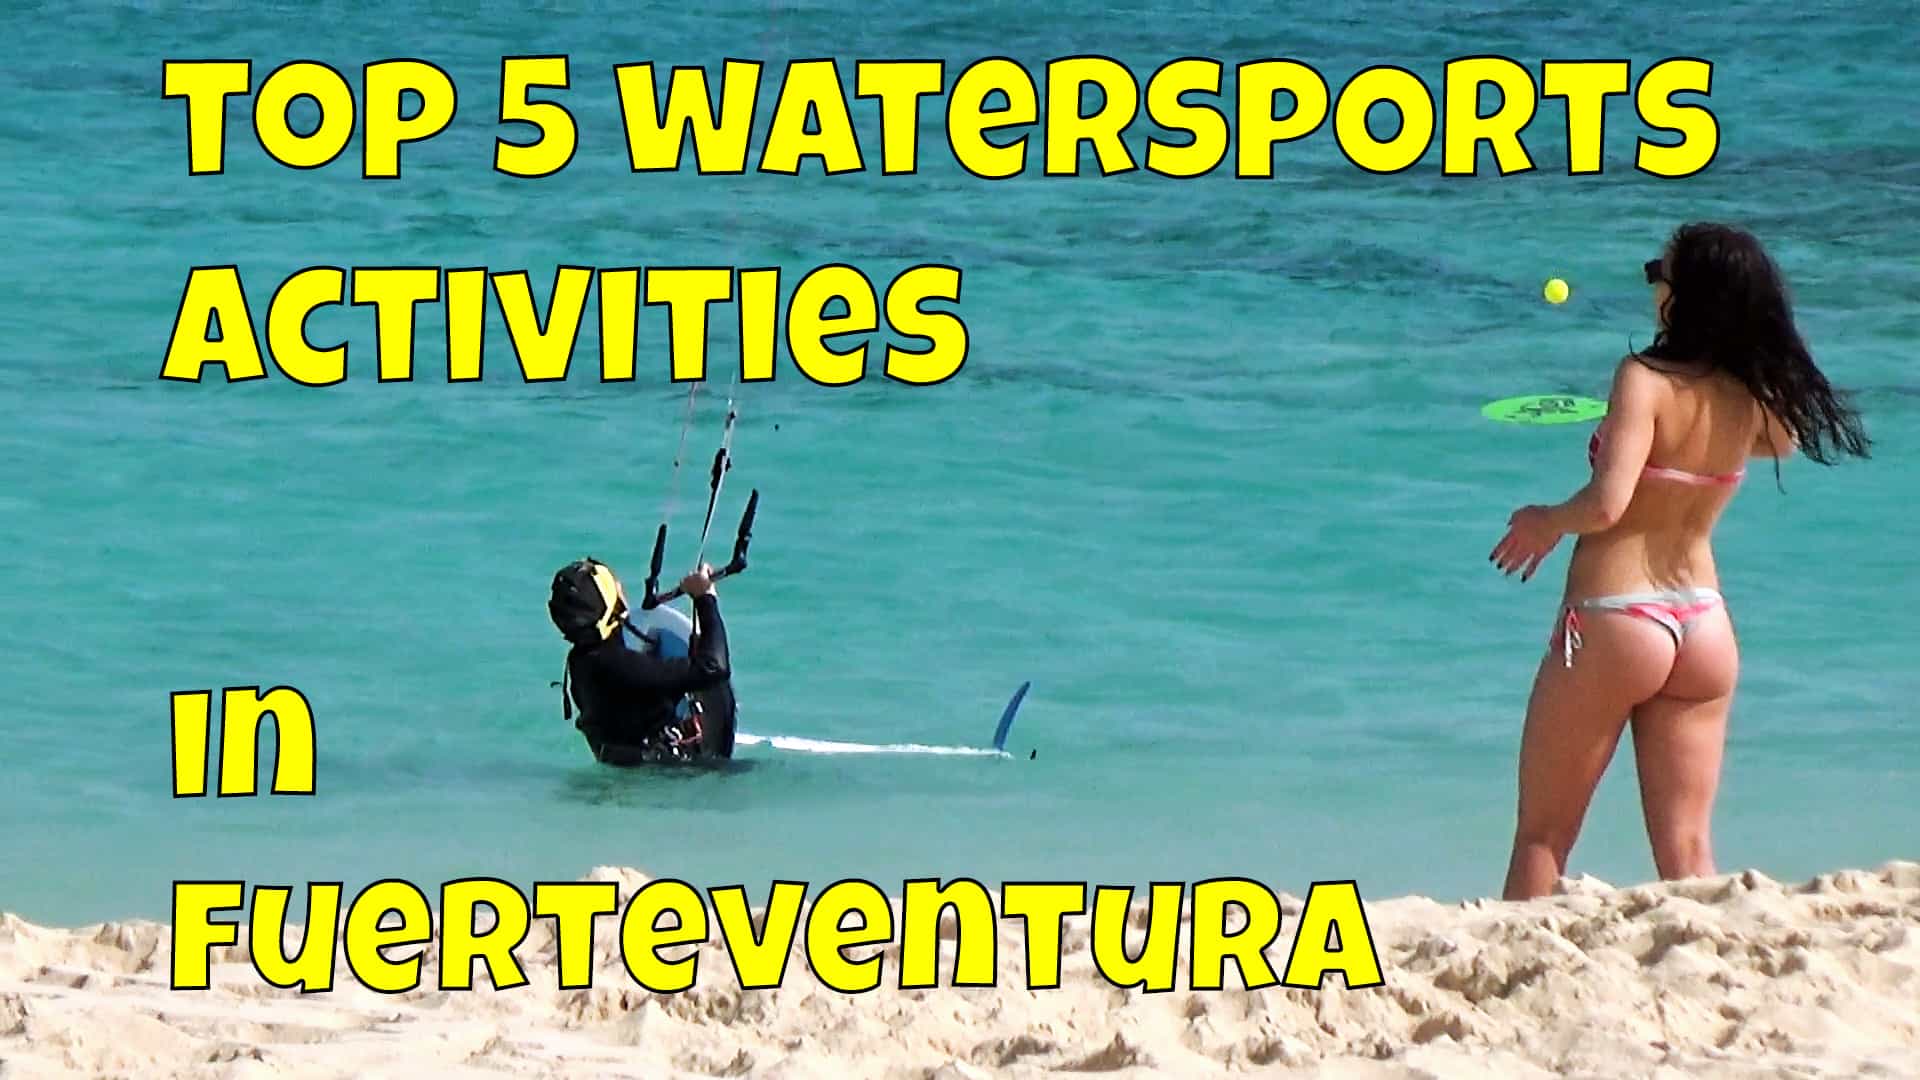 Top 5 Fuerteventura Watersports Activities